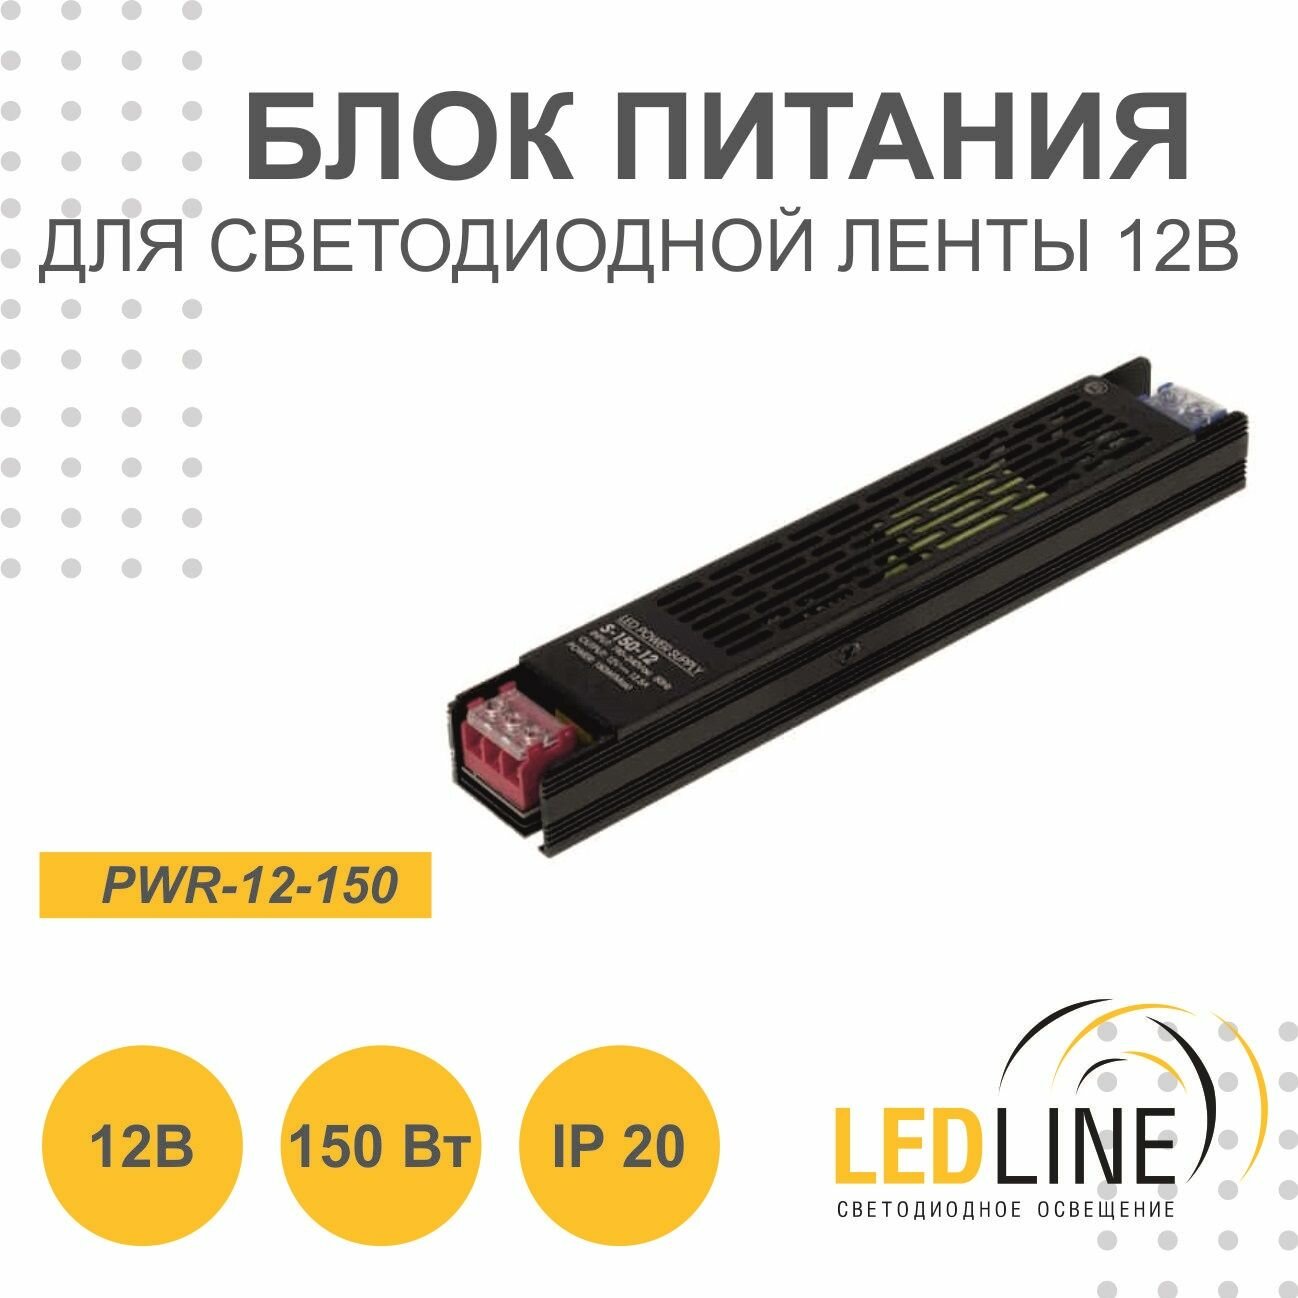 Блок питания для светодиодной ленты 12V 150W / 12В 150Вт 12.5А IP20 / LEDLINE PWR-12-150